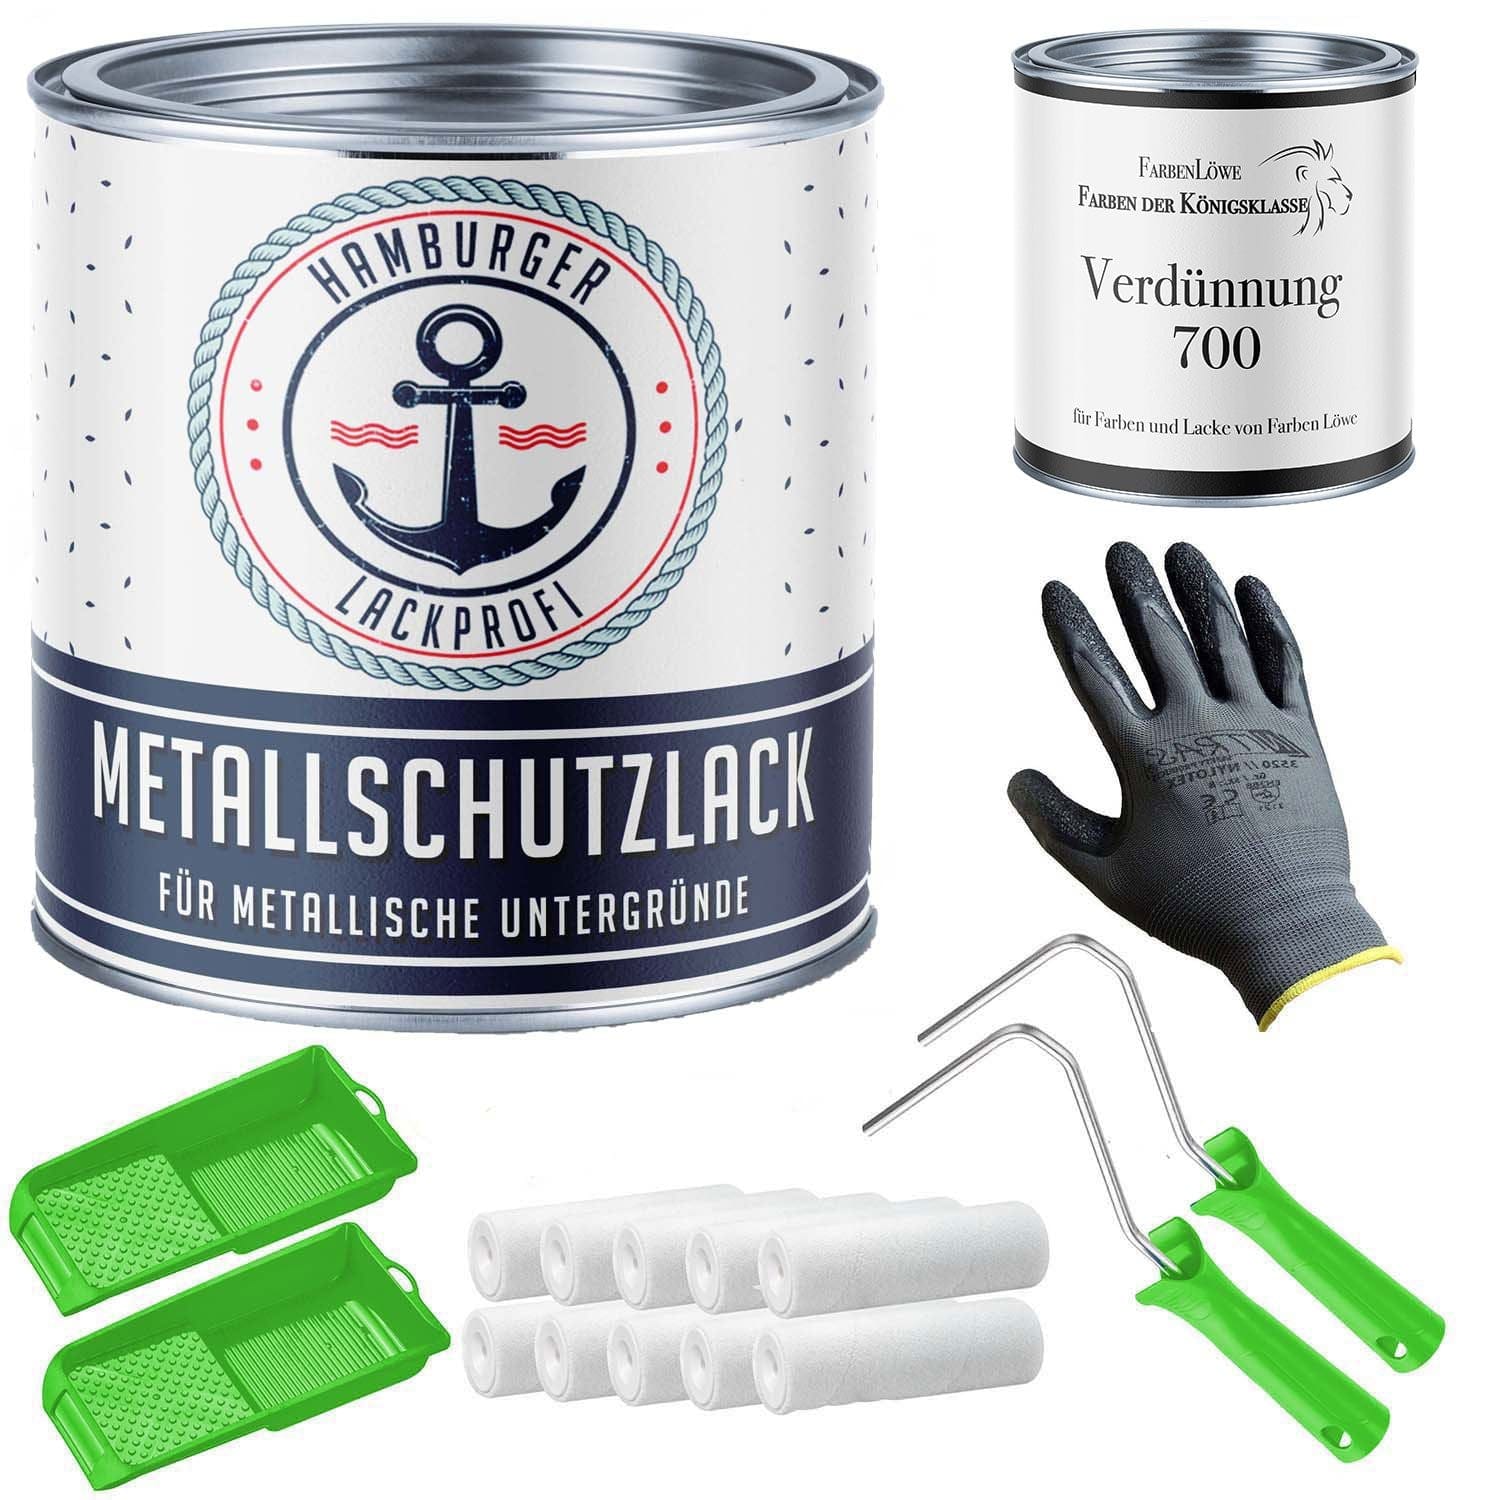 FARBENLÖWE Lacke & Beschichtungen Hamburger Lack-Profi Metallschutzlack in Schwarzoliv RAL 6015 mit Lackierset (X300) & Verdünnung (1 L) - 30% Sparangebot